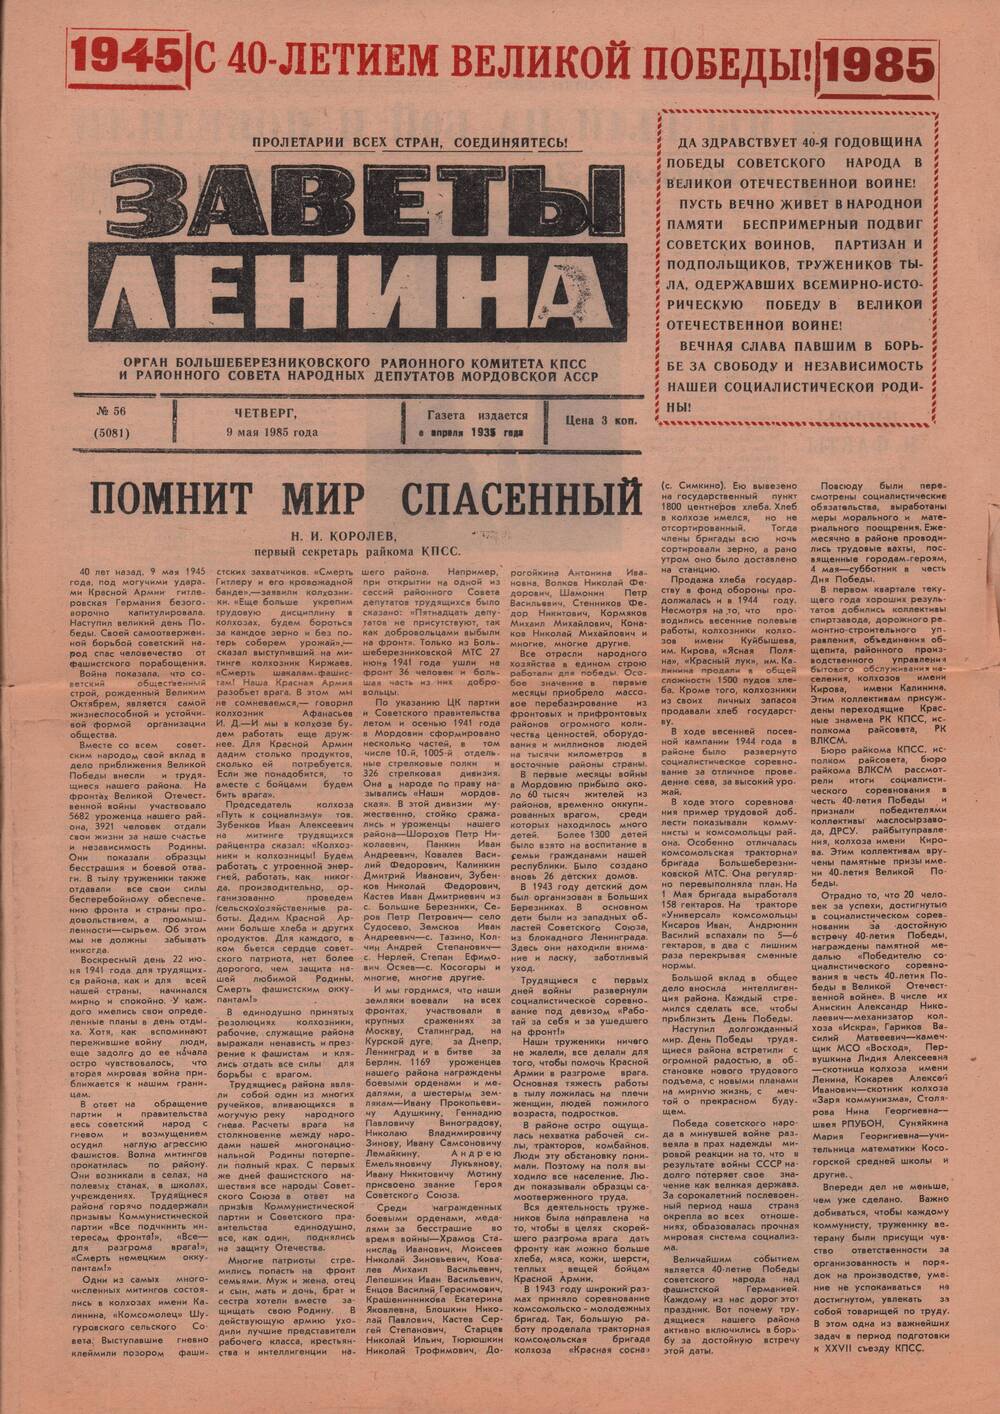 Газета Заветы Ленина от 09.05.1985 г. со статьей Старцева И.И. Завершающее сражение.